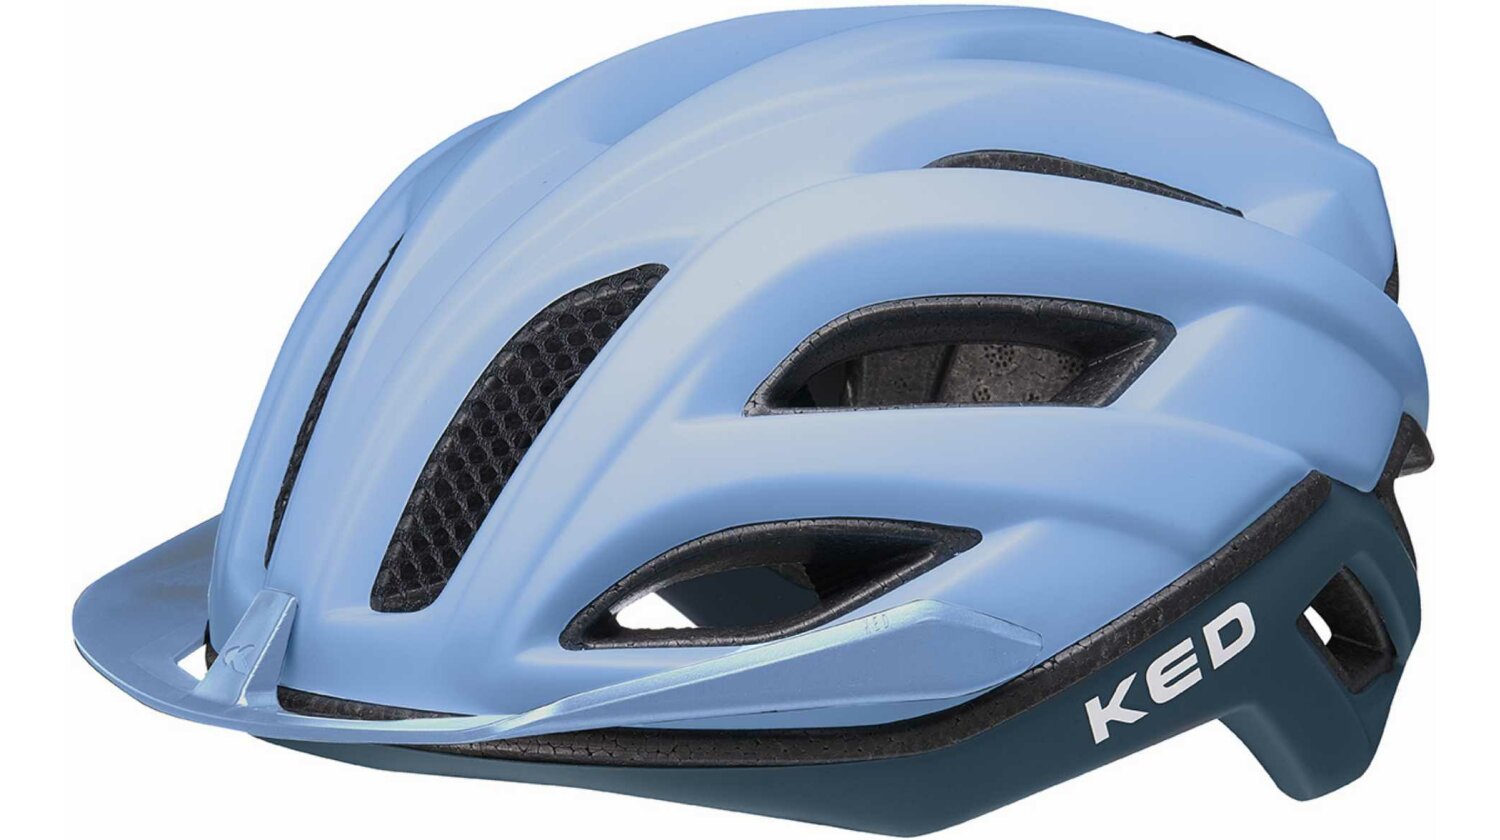 KED Champion Visor Rennrad-Helm blue matt